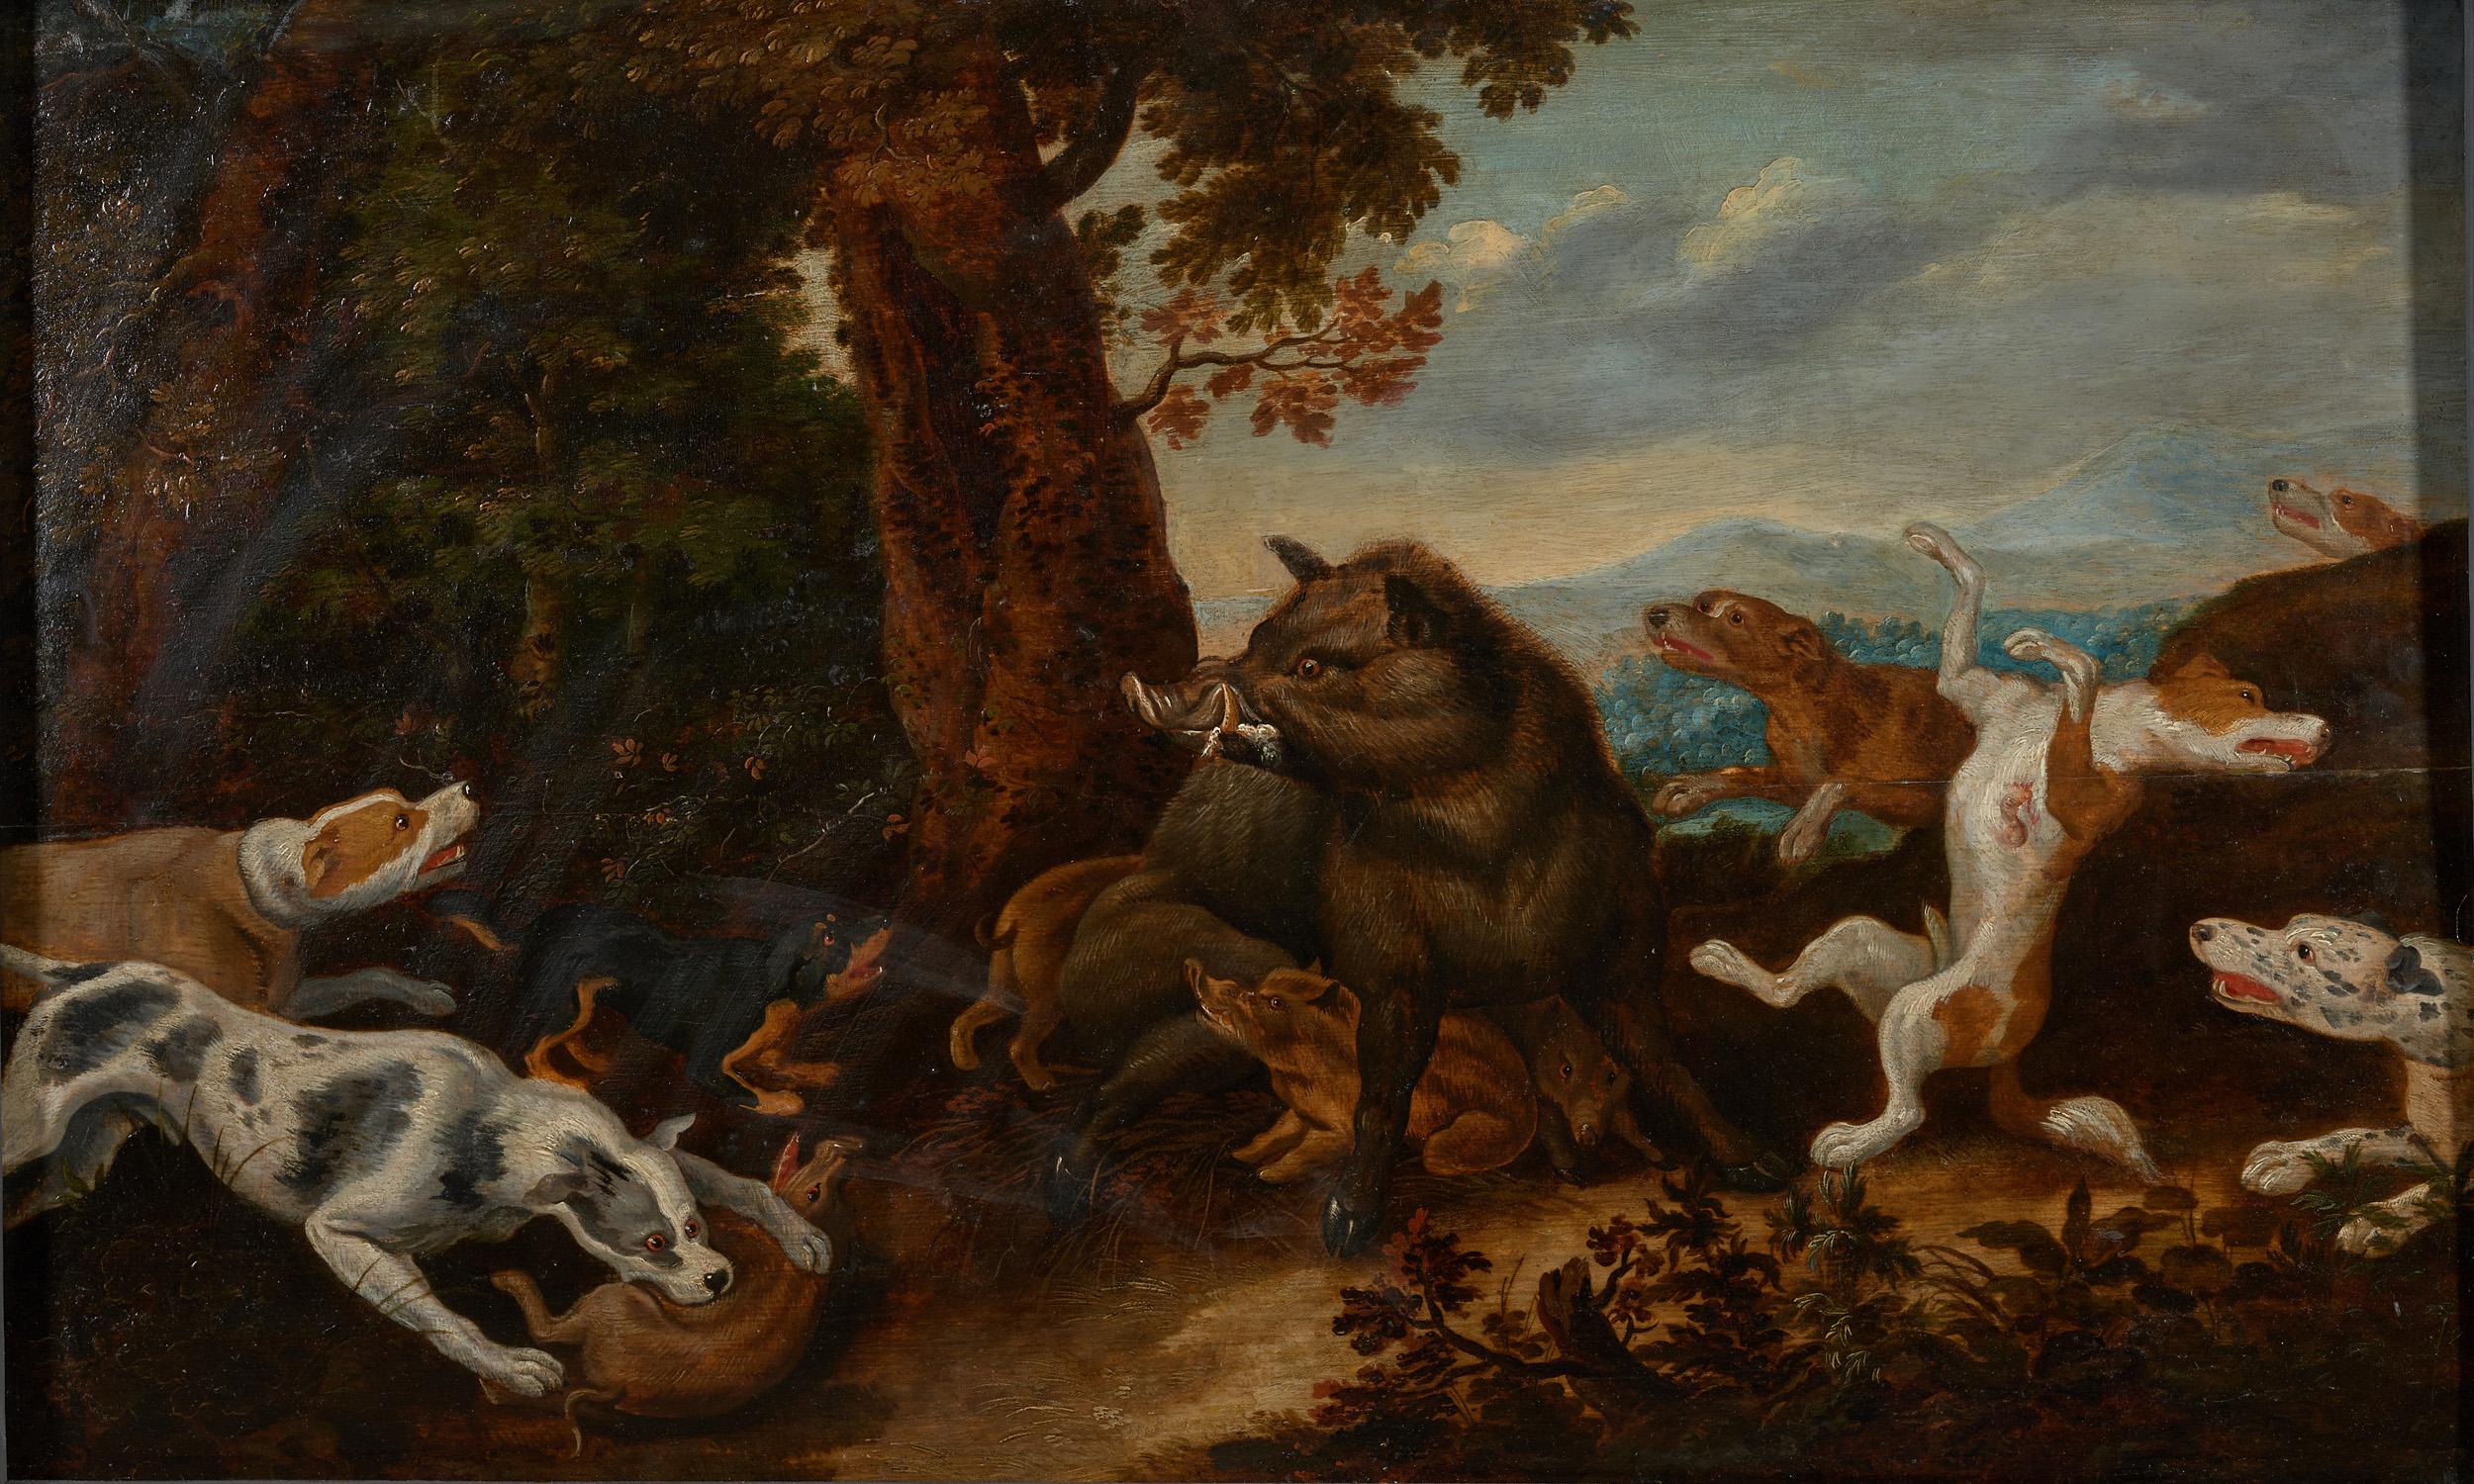 chasse au sanglier dans le style de Frans Snijders, huile sur panneau de chêne du XVIIe siècle, marquée par Guilliam Gabron 1609-1662, Anvers. Le style de ce tableau est très proche des peintres anversois Frans Snijders (1579-1657) et Paul de Vos,